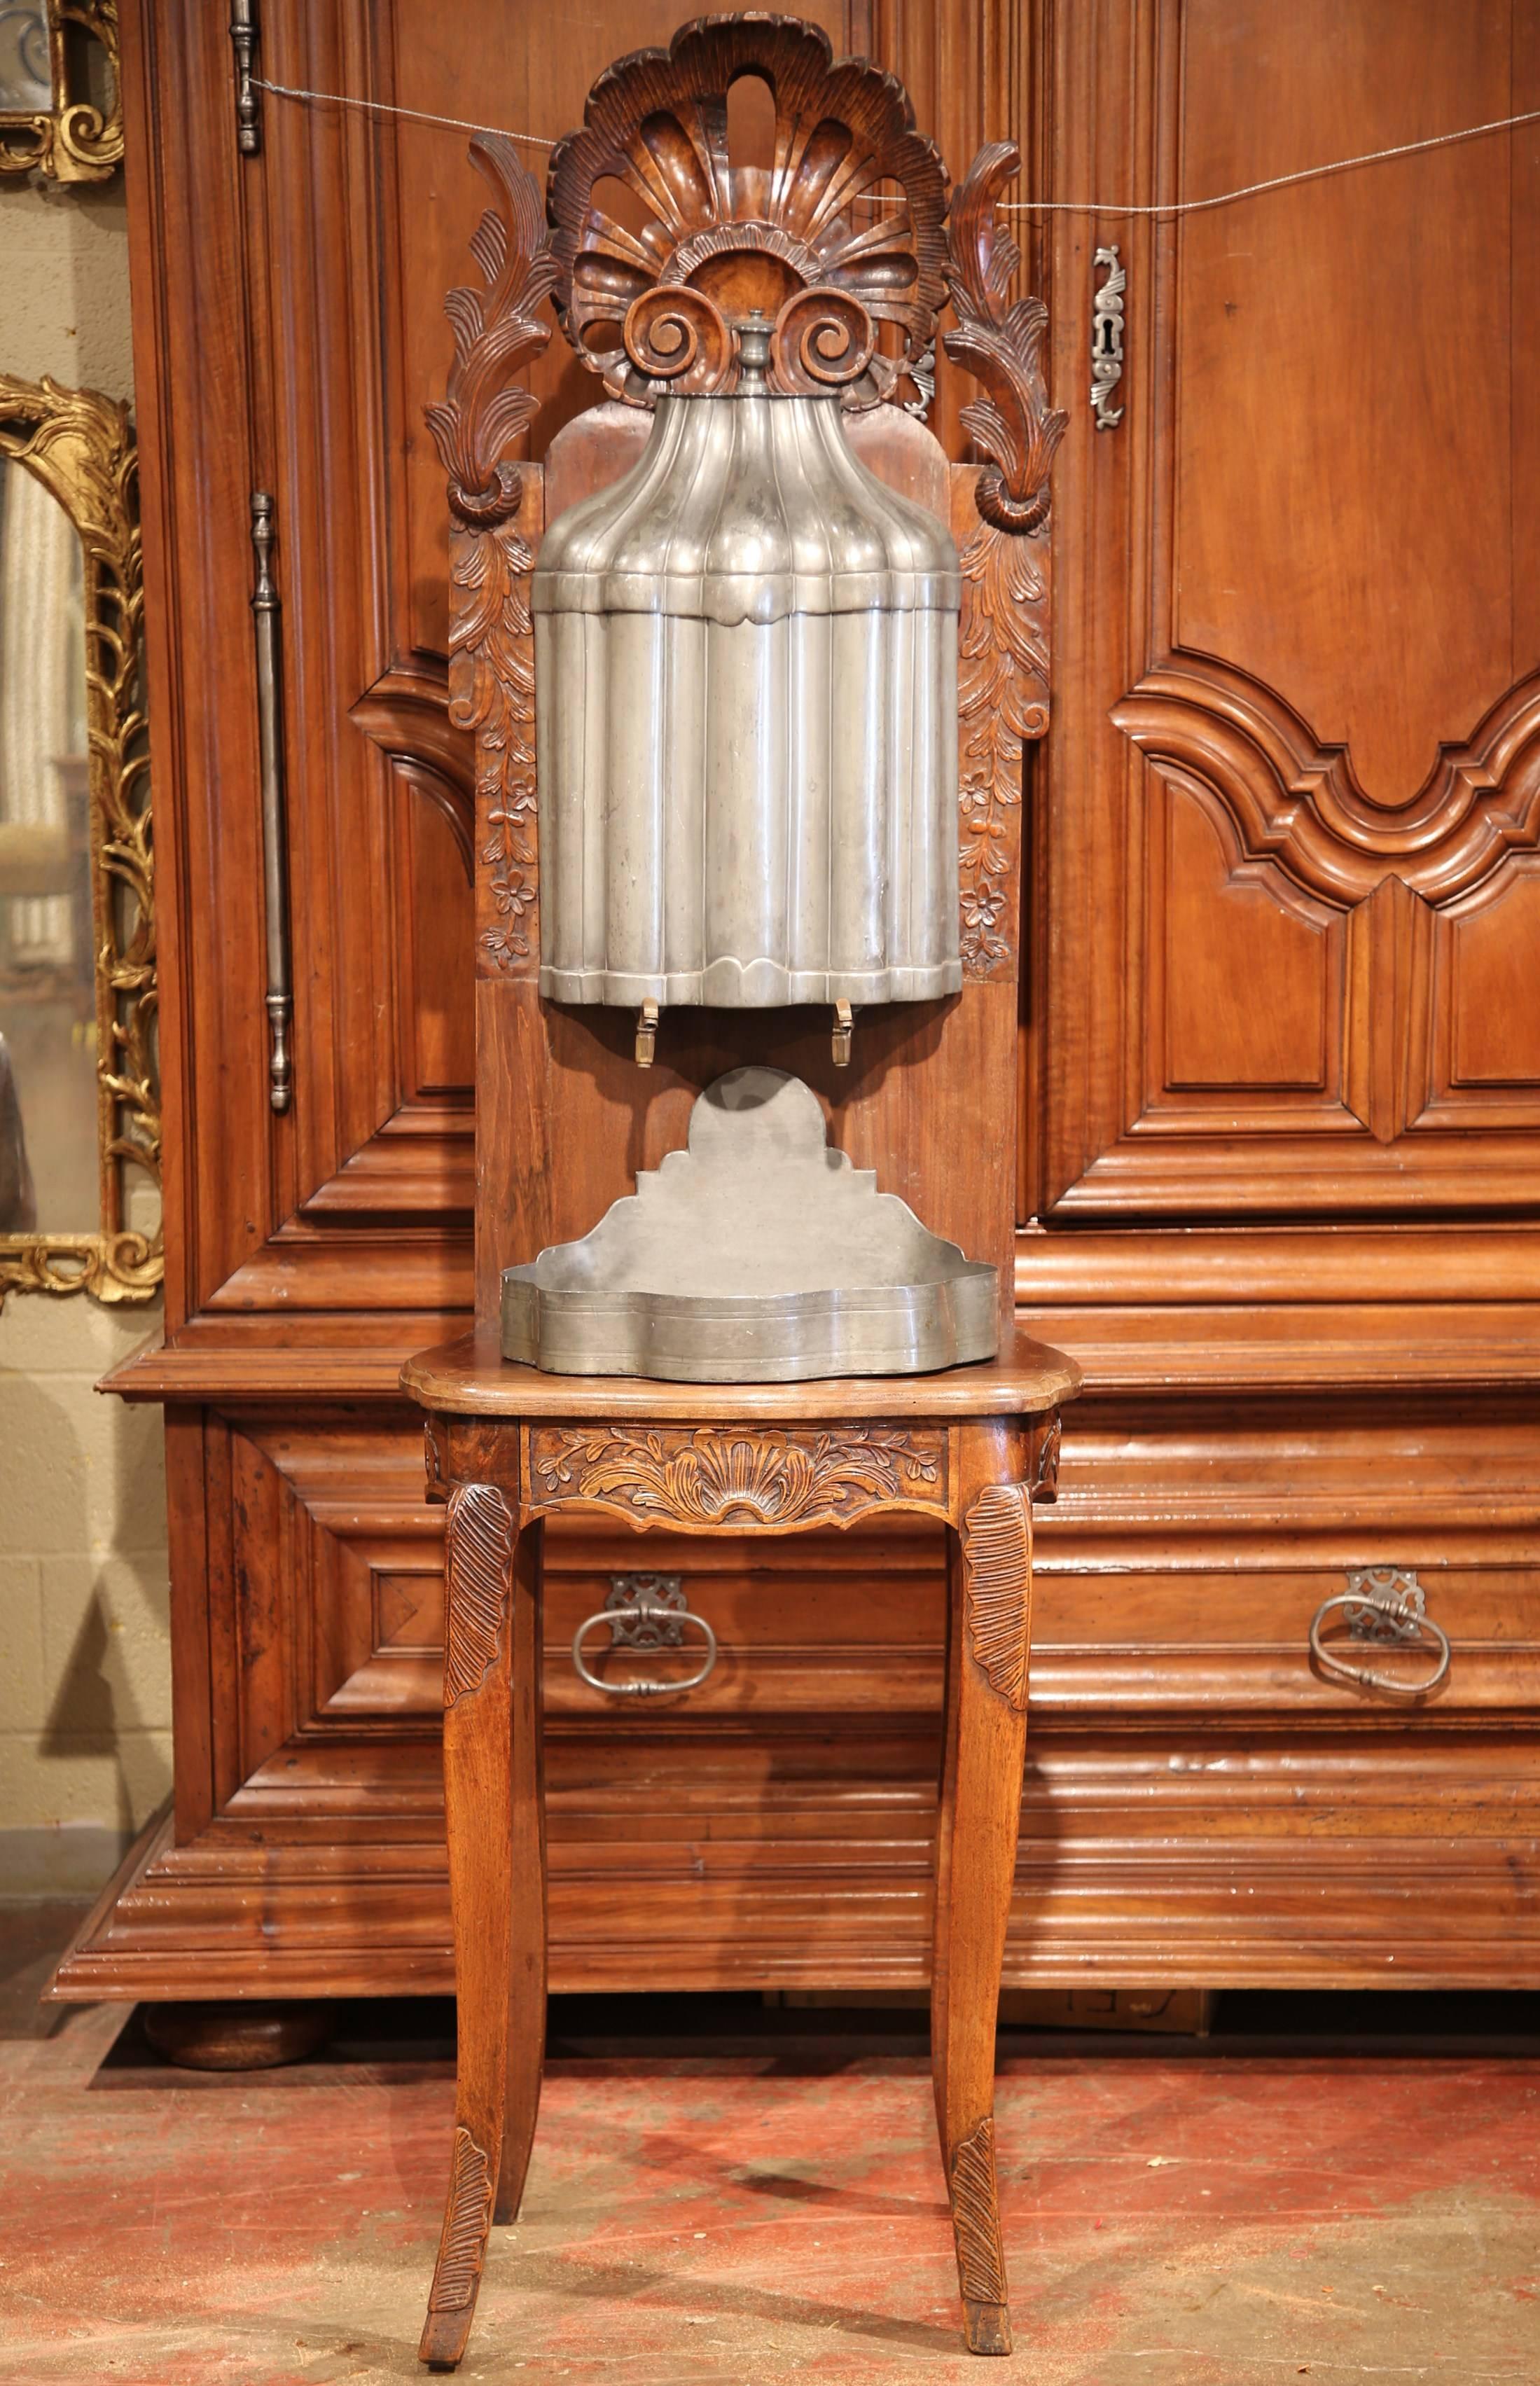 Dieser elegante, antike Brunnen wurde um 1780 in Lyon, Frankreich, hergestellt. In der Vergangenheit wurde diese Art von Lavabos eigentlich zum Händewaschen verwendet. Dieser Brunnen ist aus Zinn mit bronzenen Wasserhähnen gefertigt und ruht auf